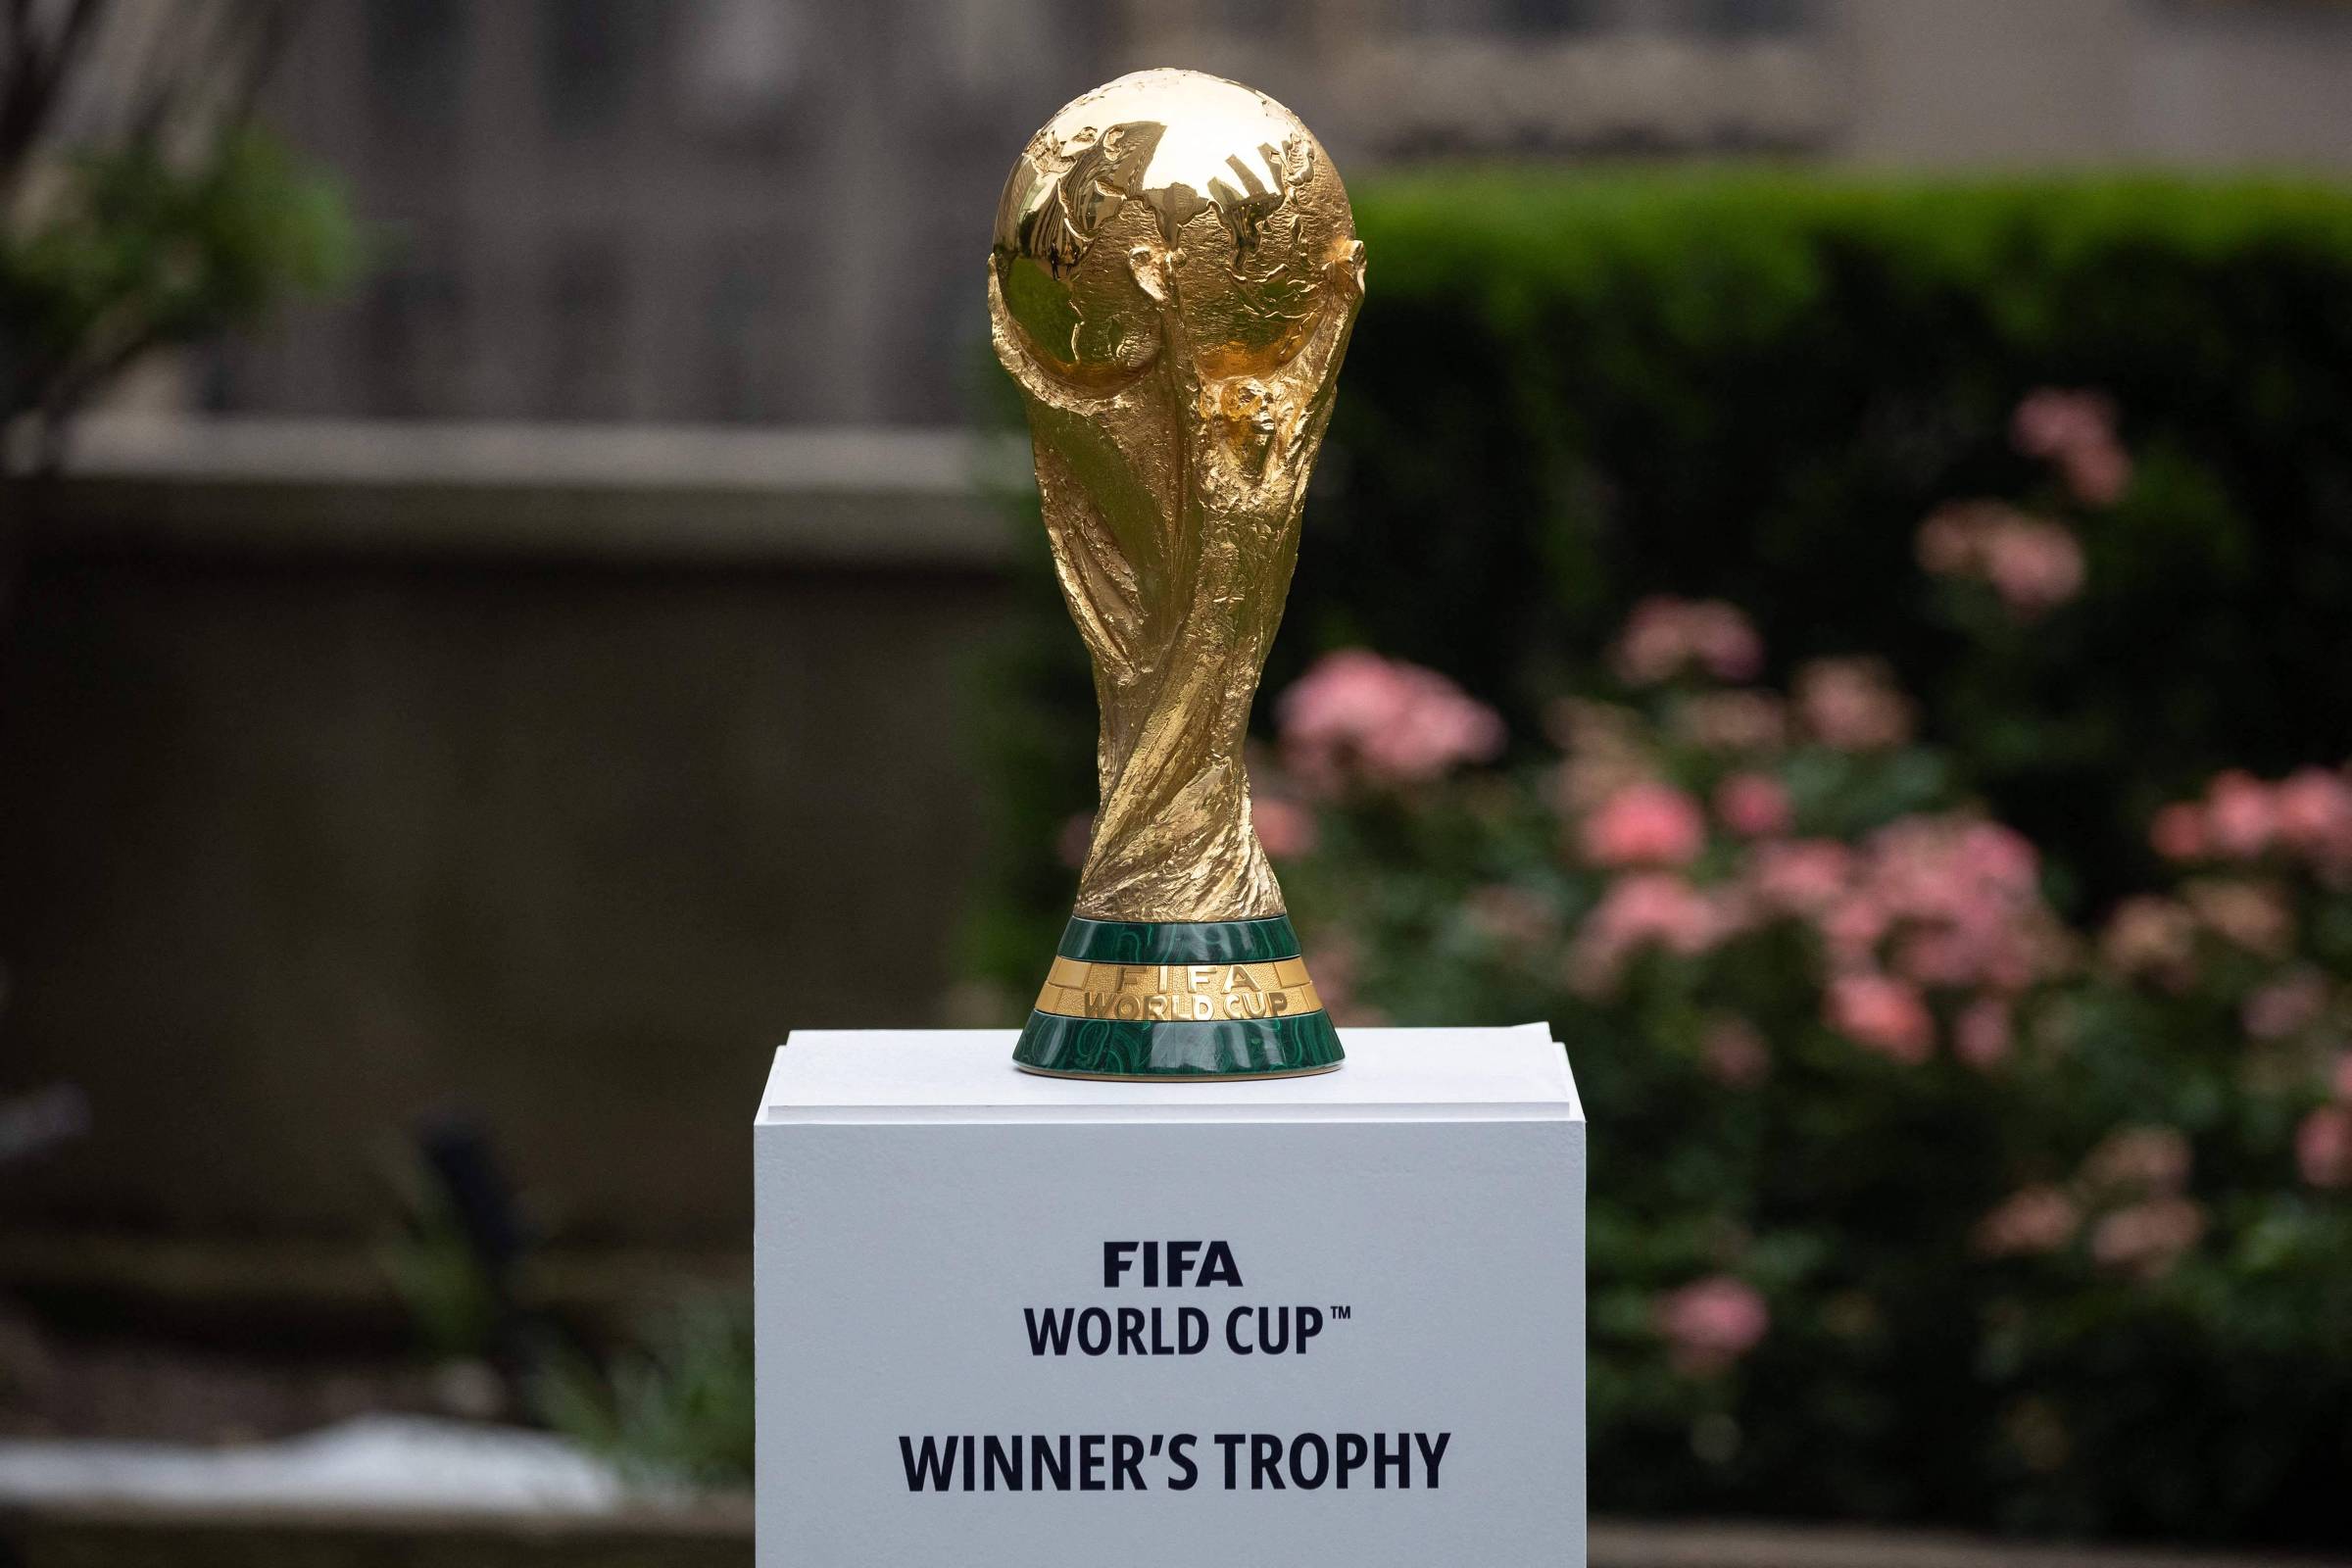 Melhor do mundo', segundo Fifa, Brasil nunca pareceu tão longe de ganhar  uma Copa como em 2026